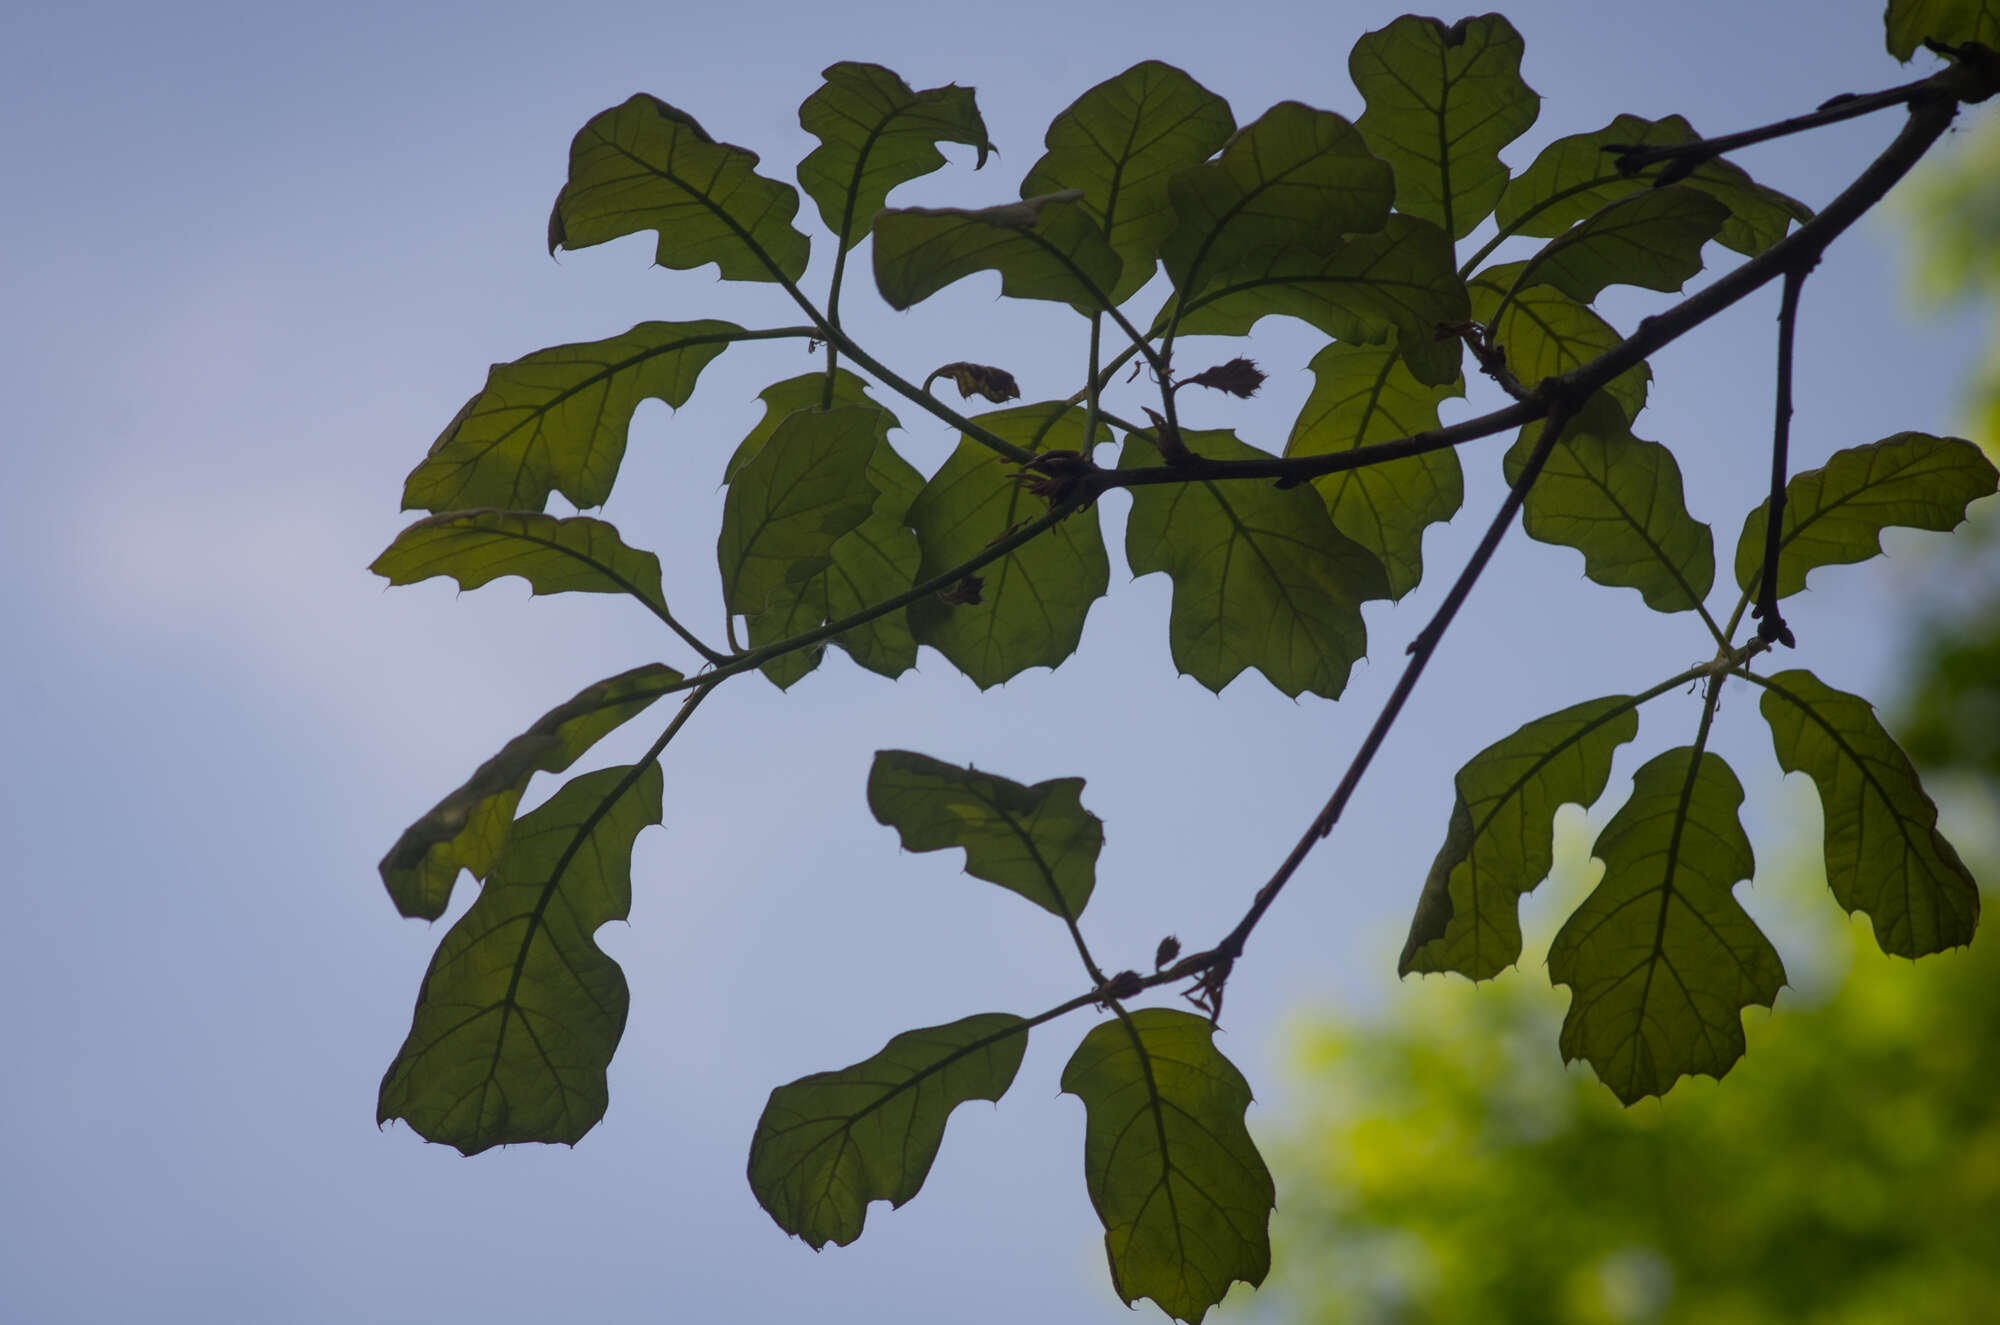 Image of Bush oak